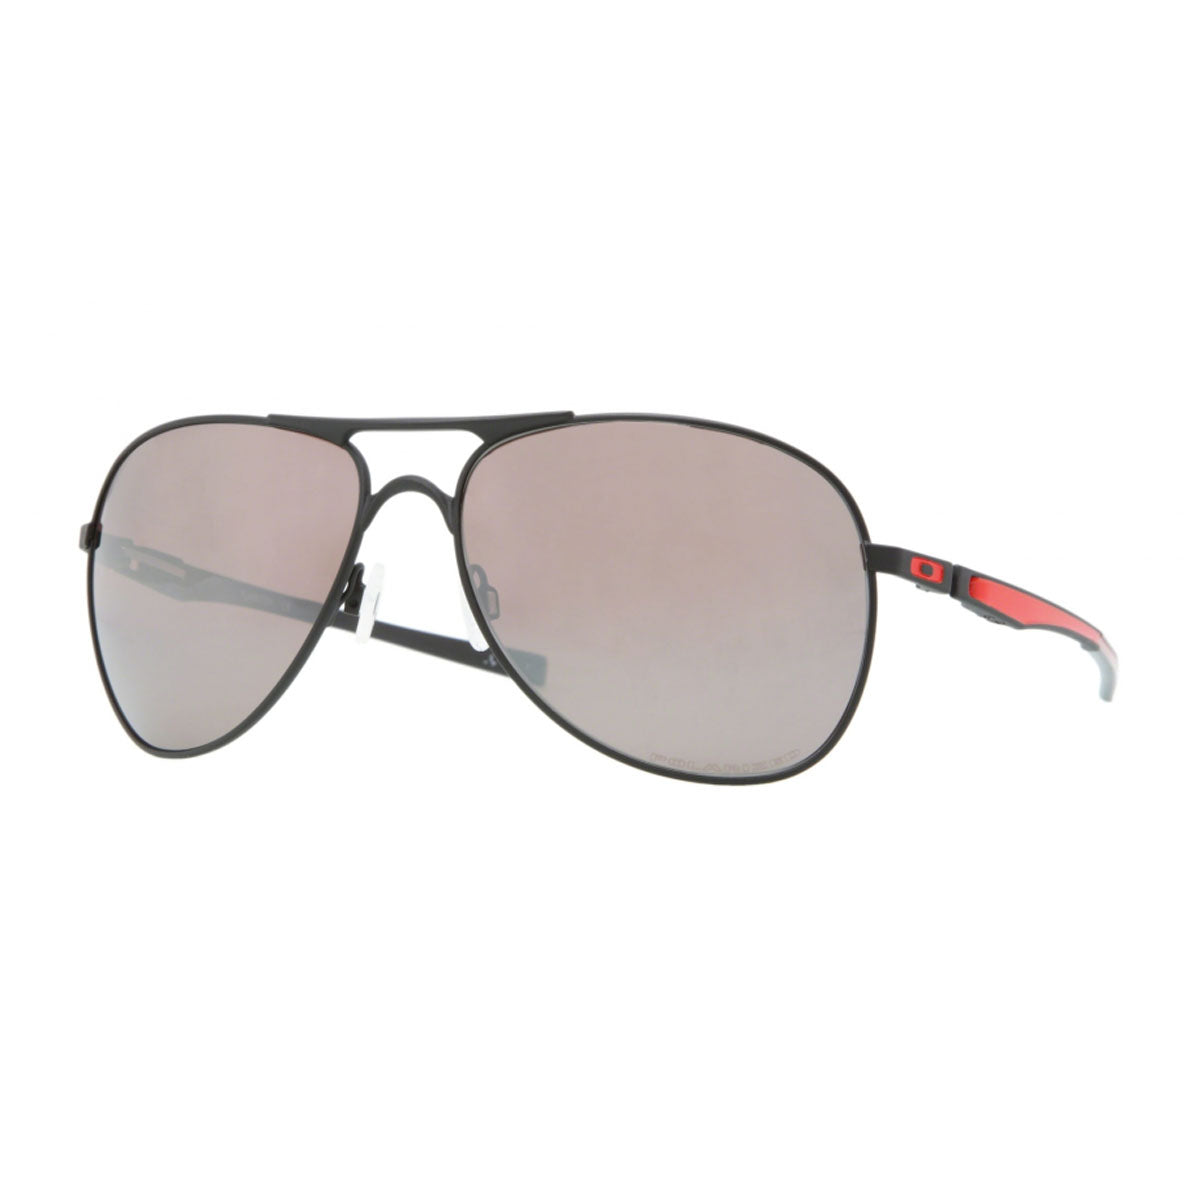 Oakley Plaintiff Sunglasses - Mate Black / OO Black Iridium Polarized Lens - OO4057-07 - Mate Black/OO Black Iridium Polarized